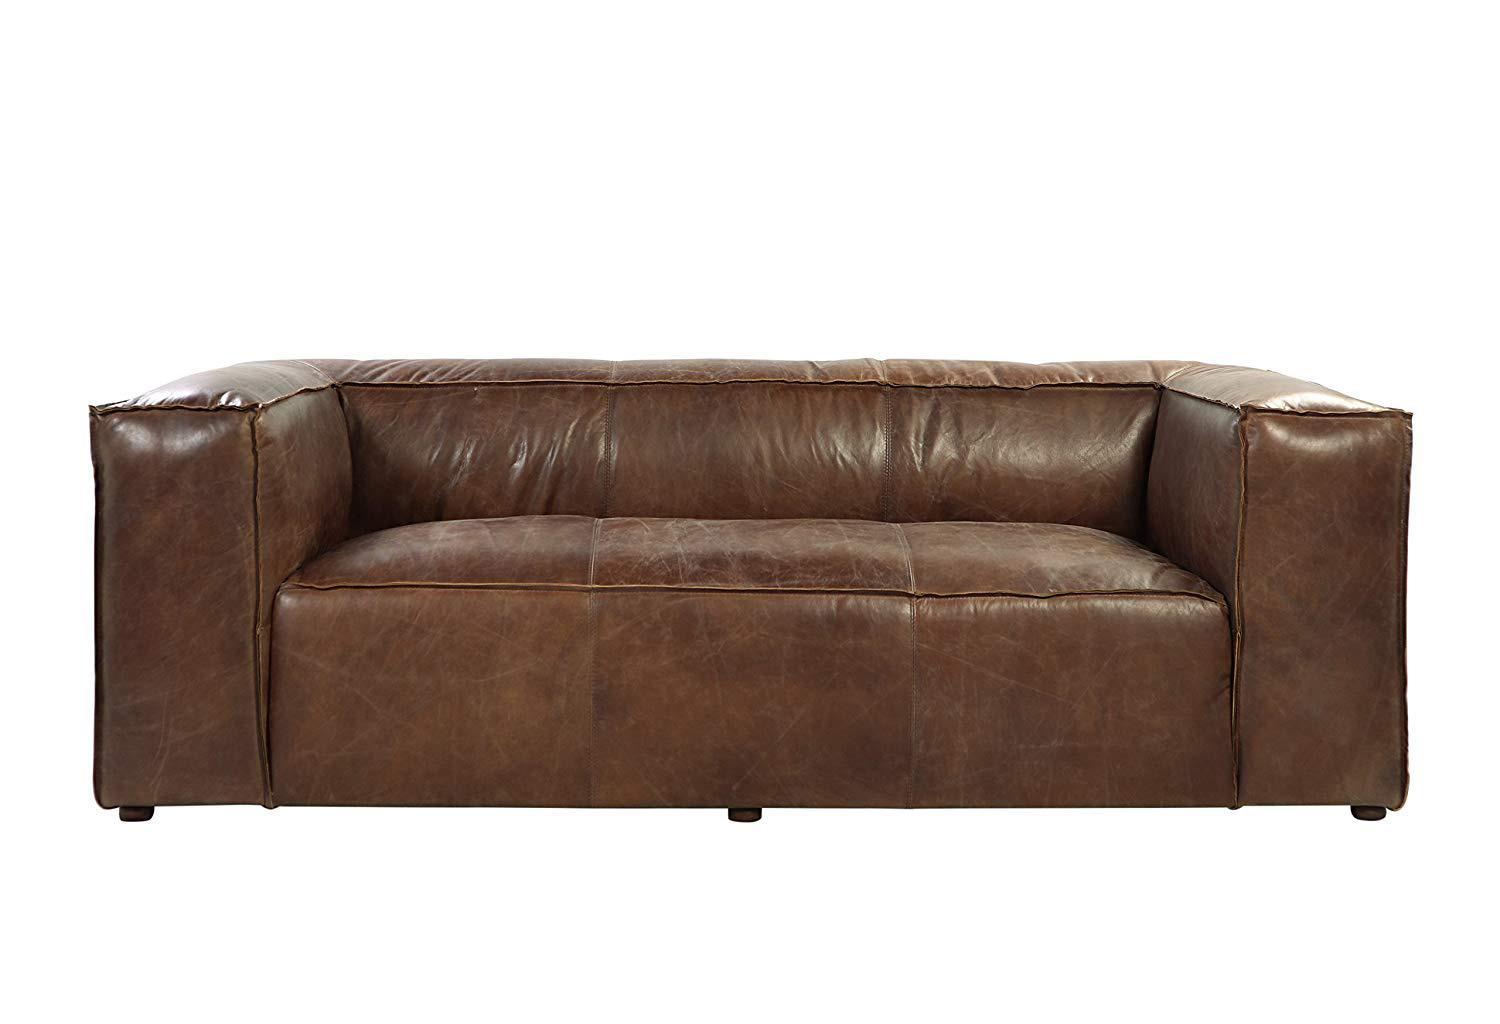 

    
Industrial Vintage Brown Top Grain Leather Sofa Set 3Pcs Acme Brancaster
